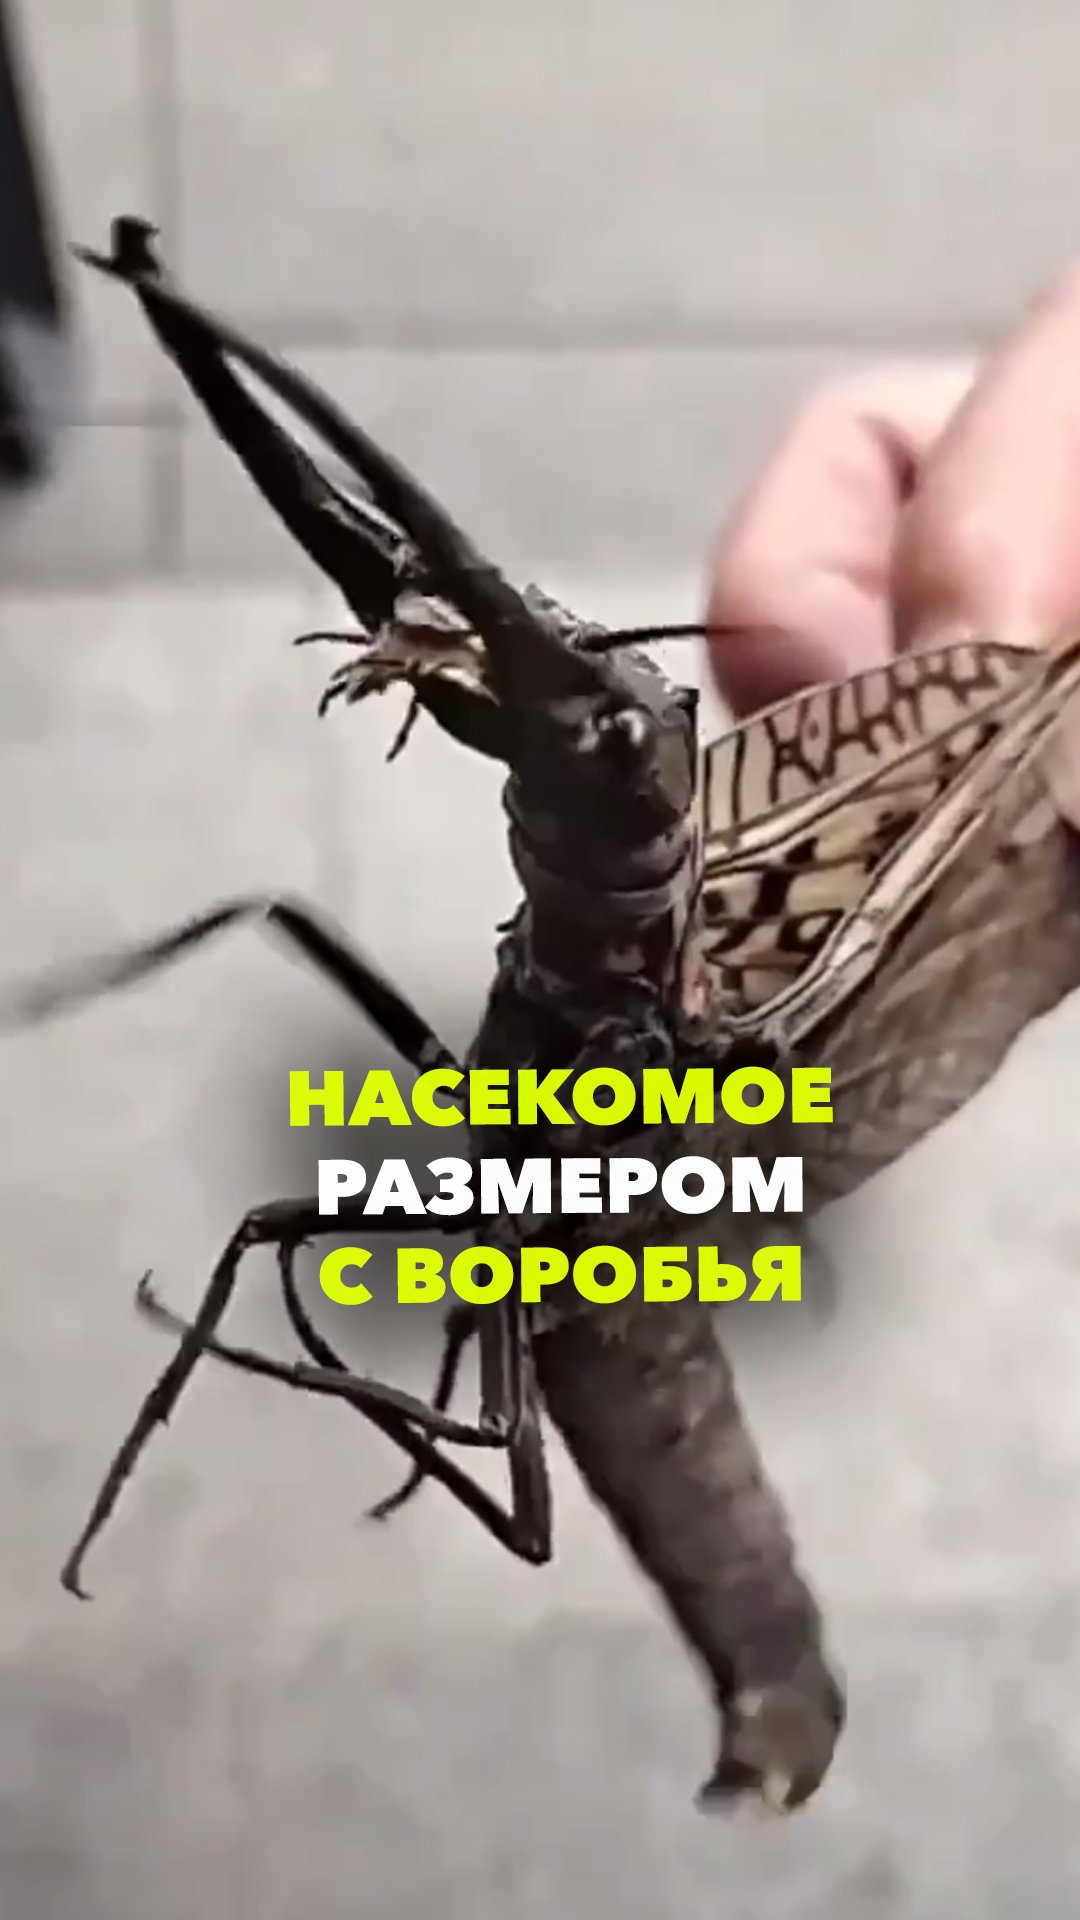 Осторожно, крипота: твиттерские нашли крупнейшее летающее насекомое размером с воробья — Коридалиду